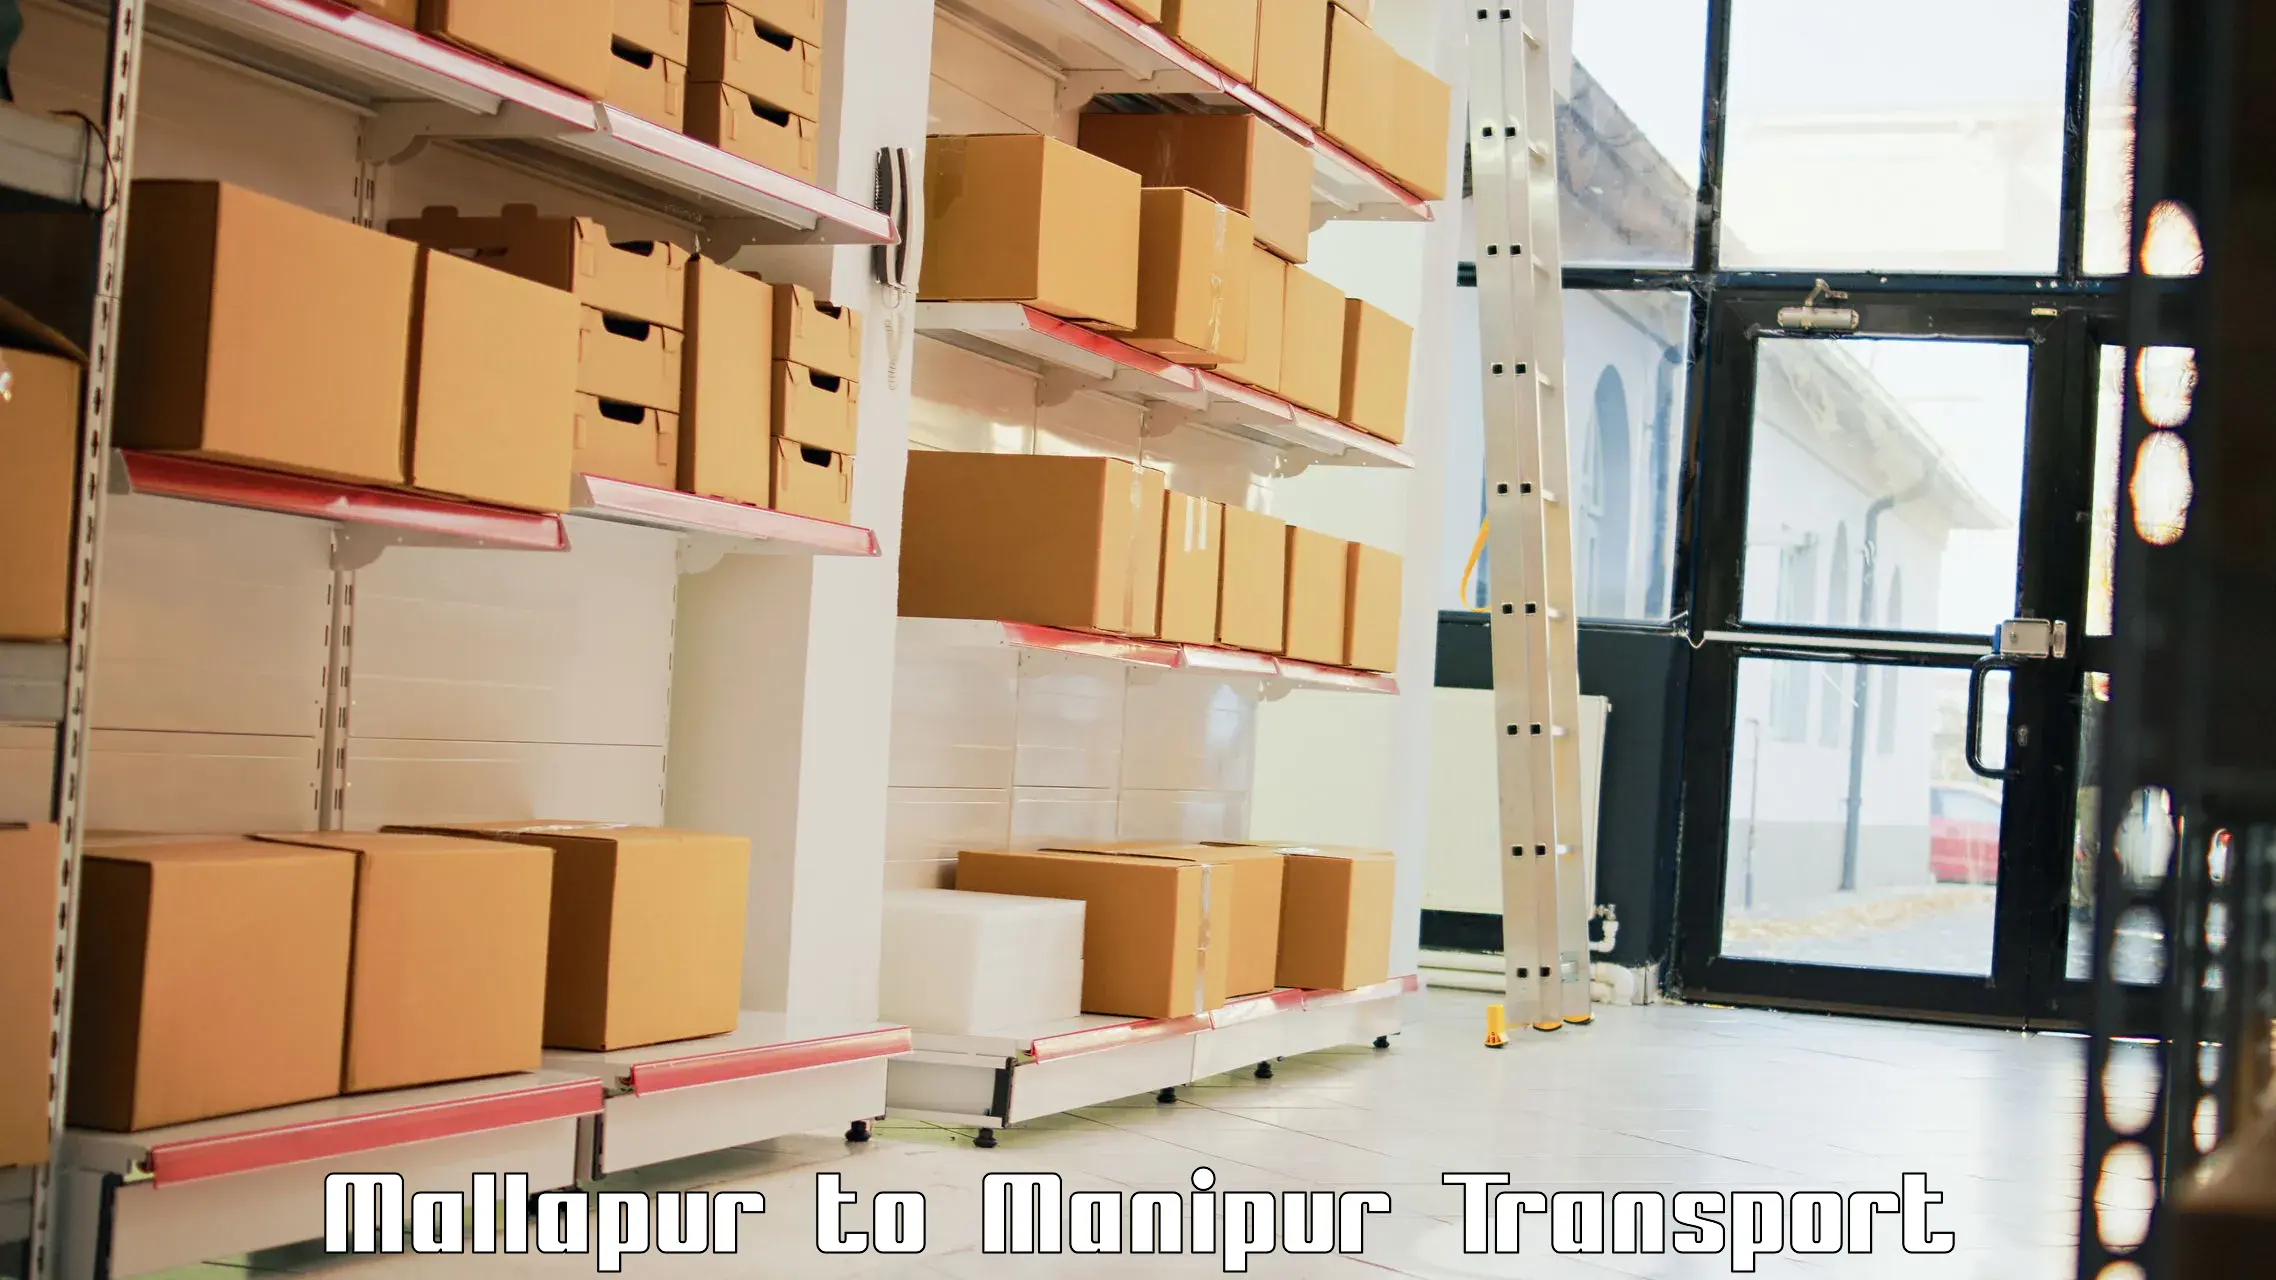 Cargo transportation services Mallapur to Moirang